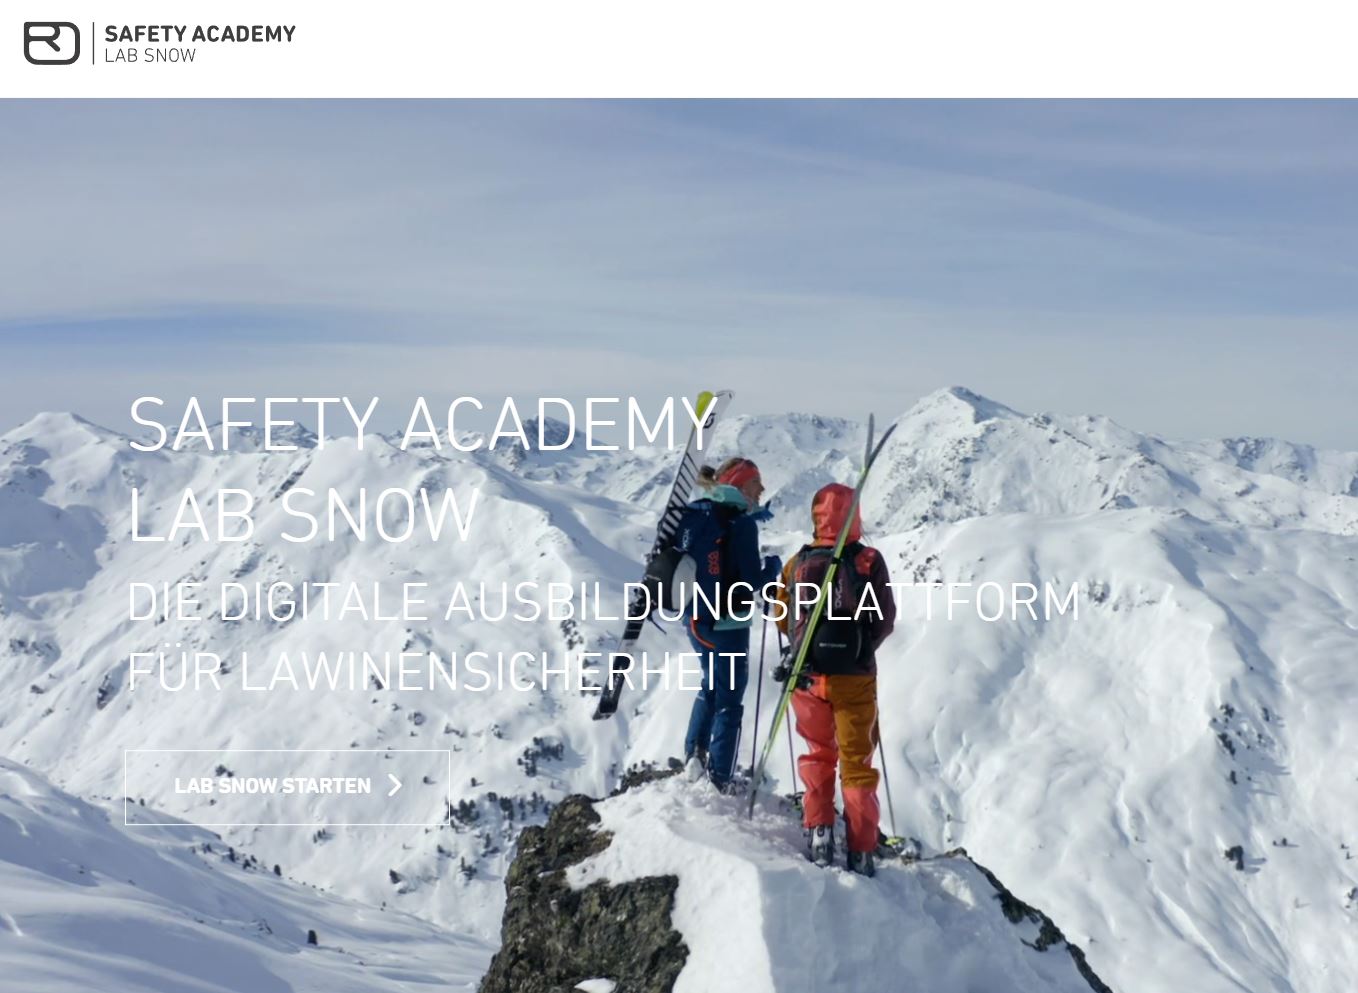 Online Schnee & Lawinen Ausbildung | ORTOVOX Safety Academy Snow eines der besten Ausbildungsformate im Internet